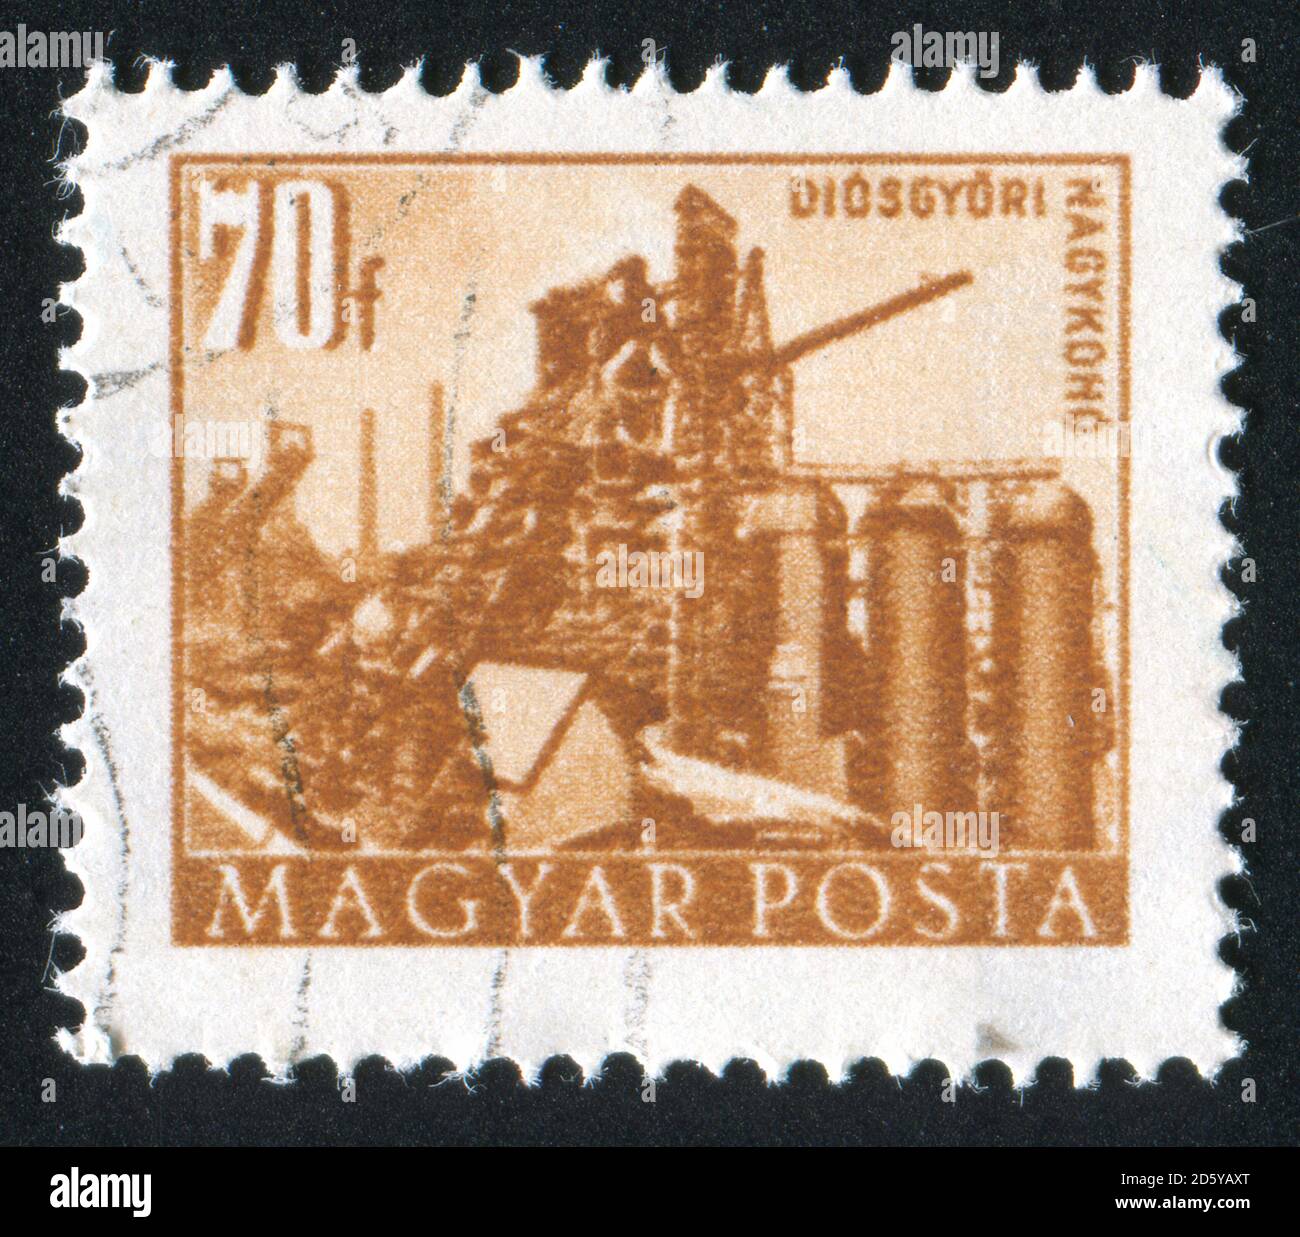 UNGARN - UM 1952: Stempel gedruckt von Ungarn, zeigt Getreideaufzug, um 1952 Stockfoto